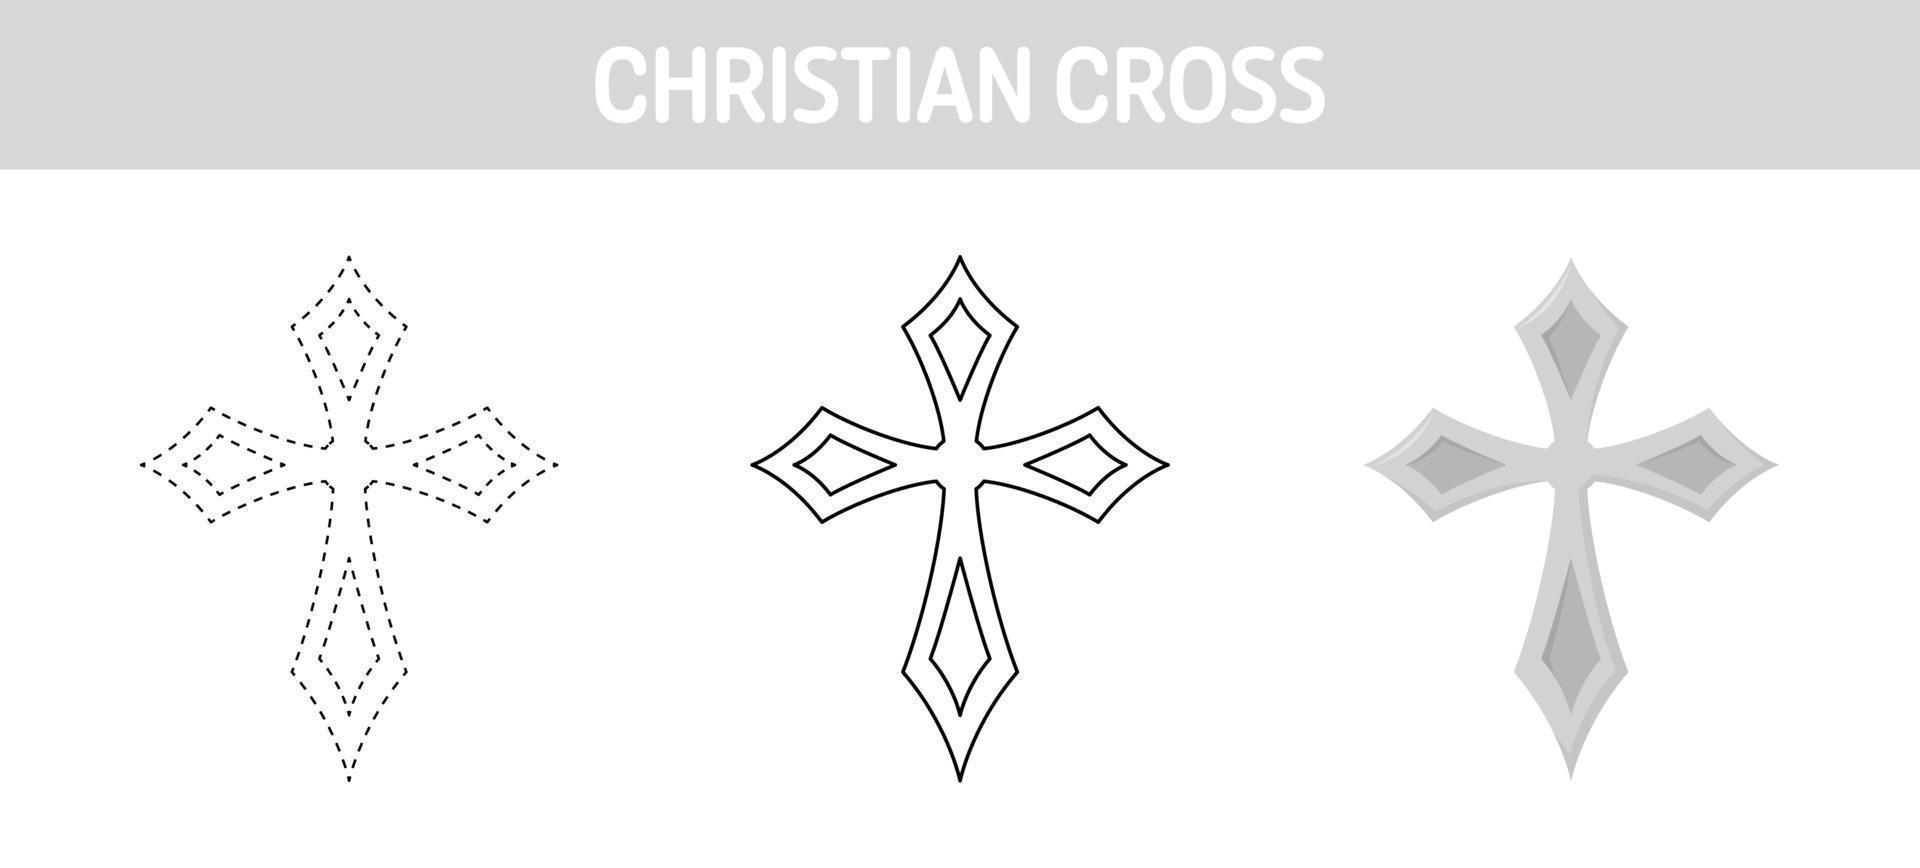 Arbeitsblatt zum Nachzeichnen und Ausmalen christlicher Kreuze für Kinder vektor